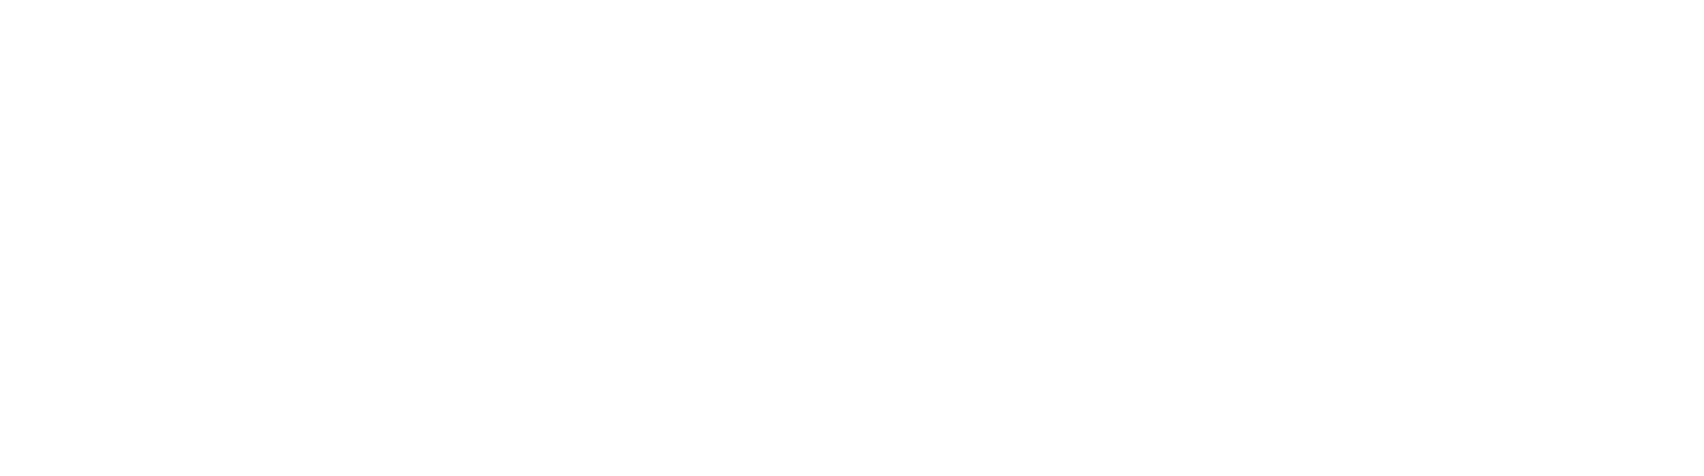 Mike's Appliance Repair Inc. Logo